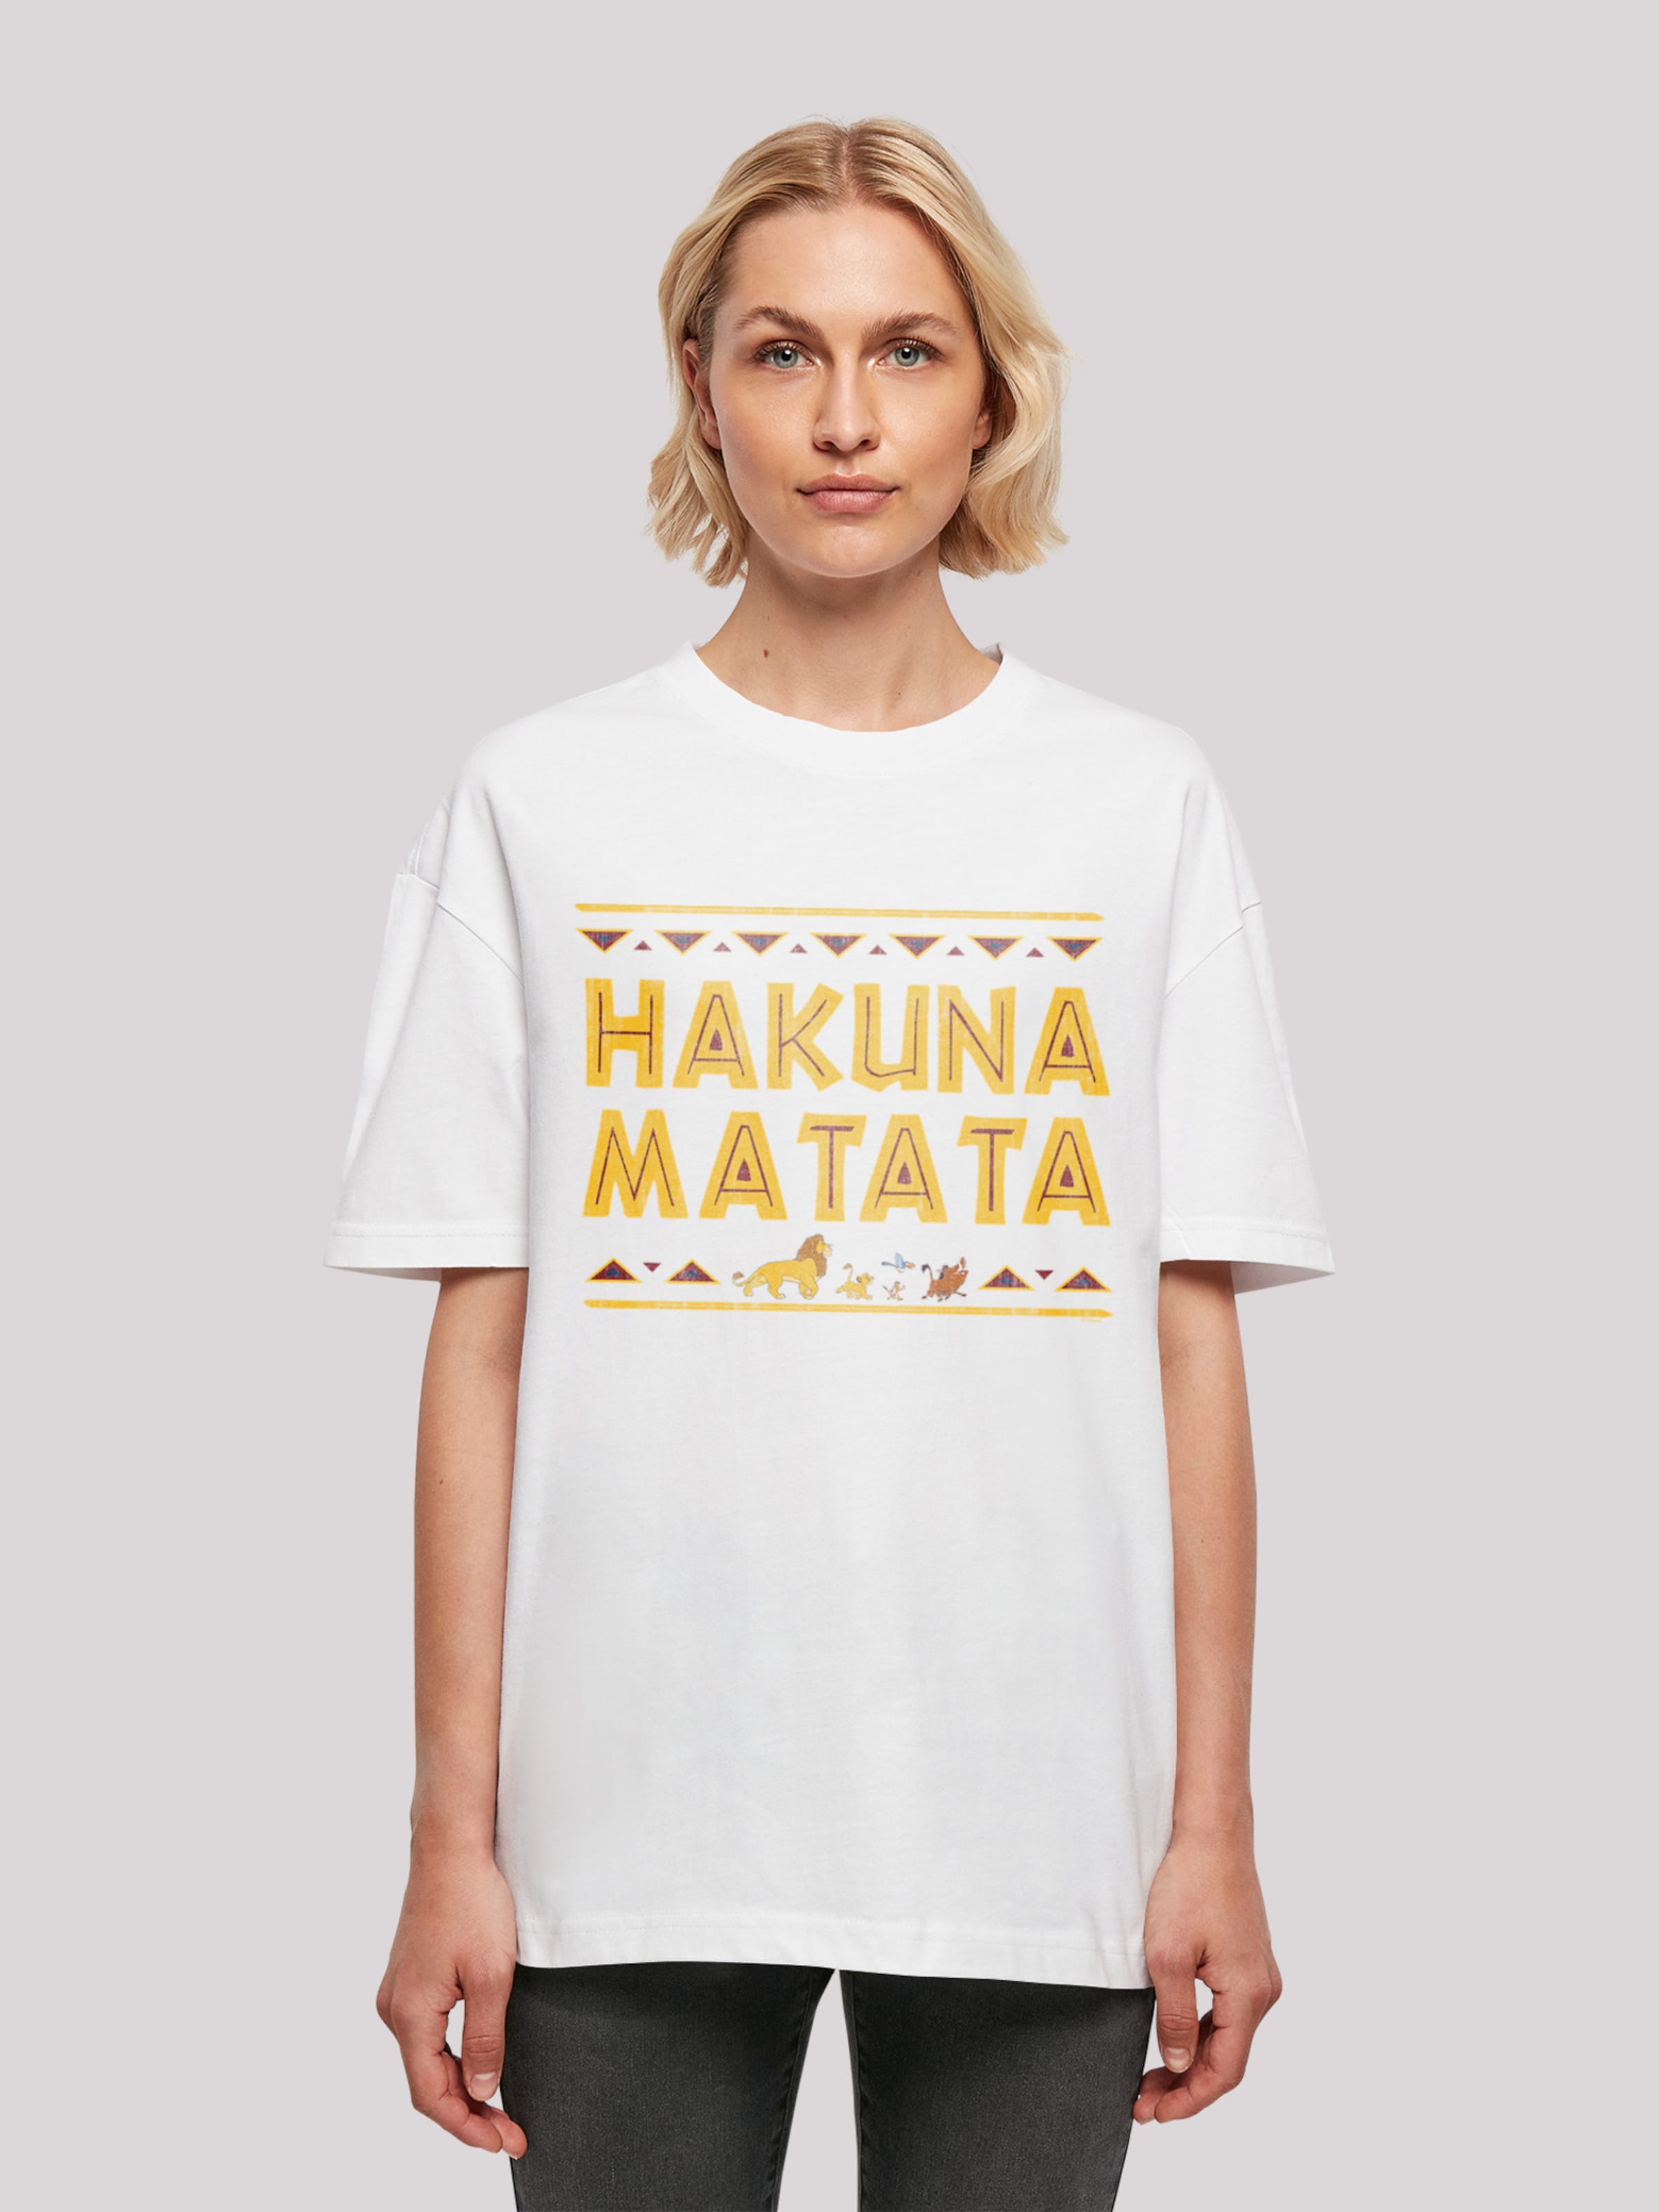 der Matata\' in ABOUT Oversized White \'Disney F4NT4STIC Hakuna König Löwen Der YOU | Shirt